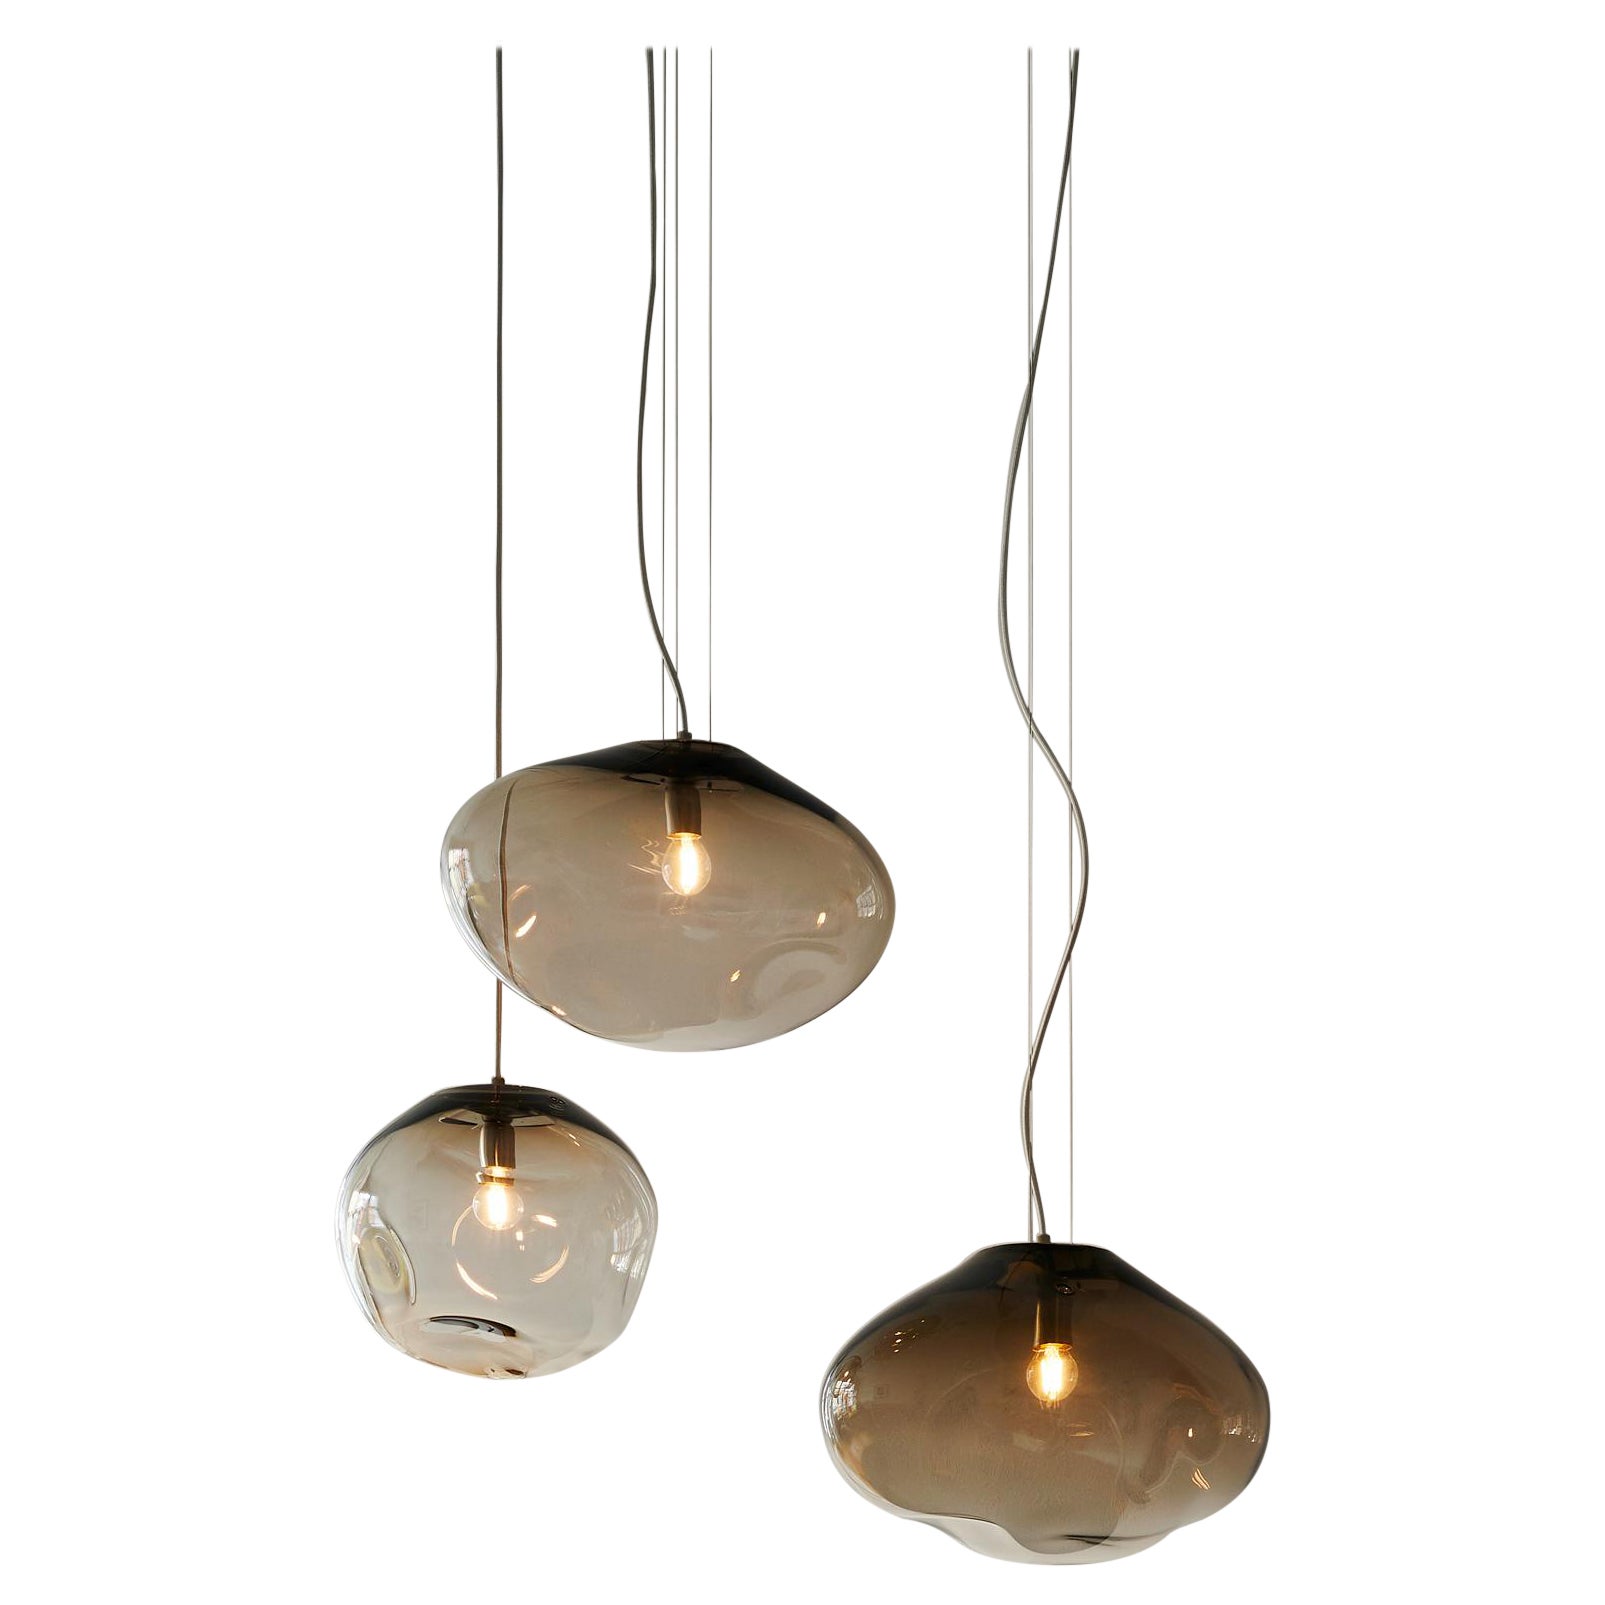 Haumea Ceiling Lamp, Hand-Blown Murano Glass, 2021, Size "M", Handmade Lighting.